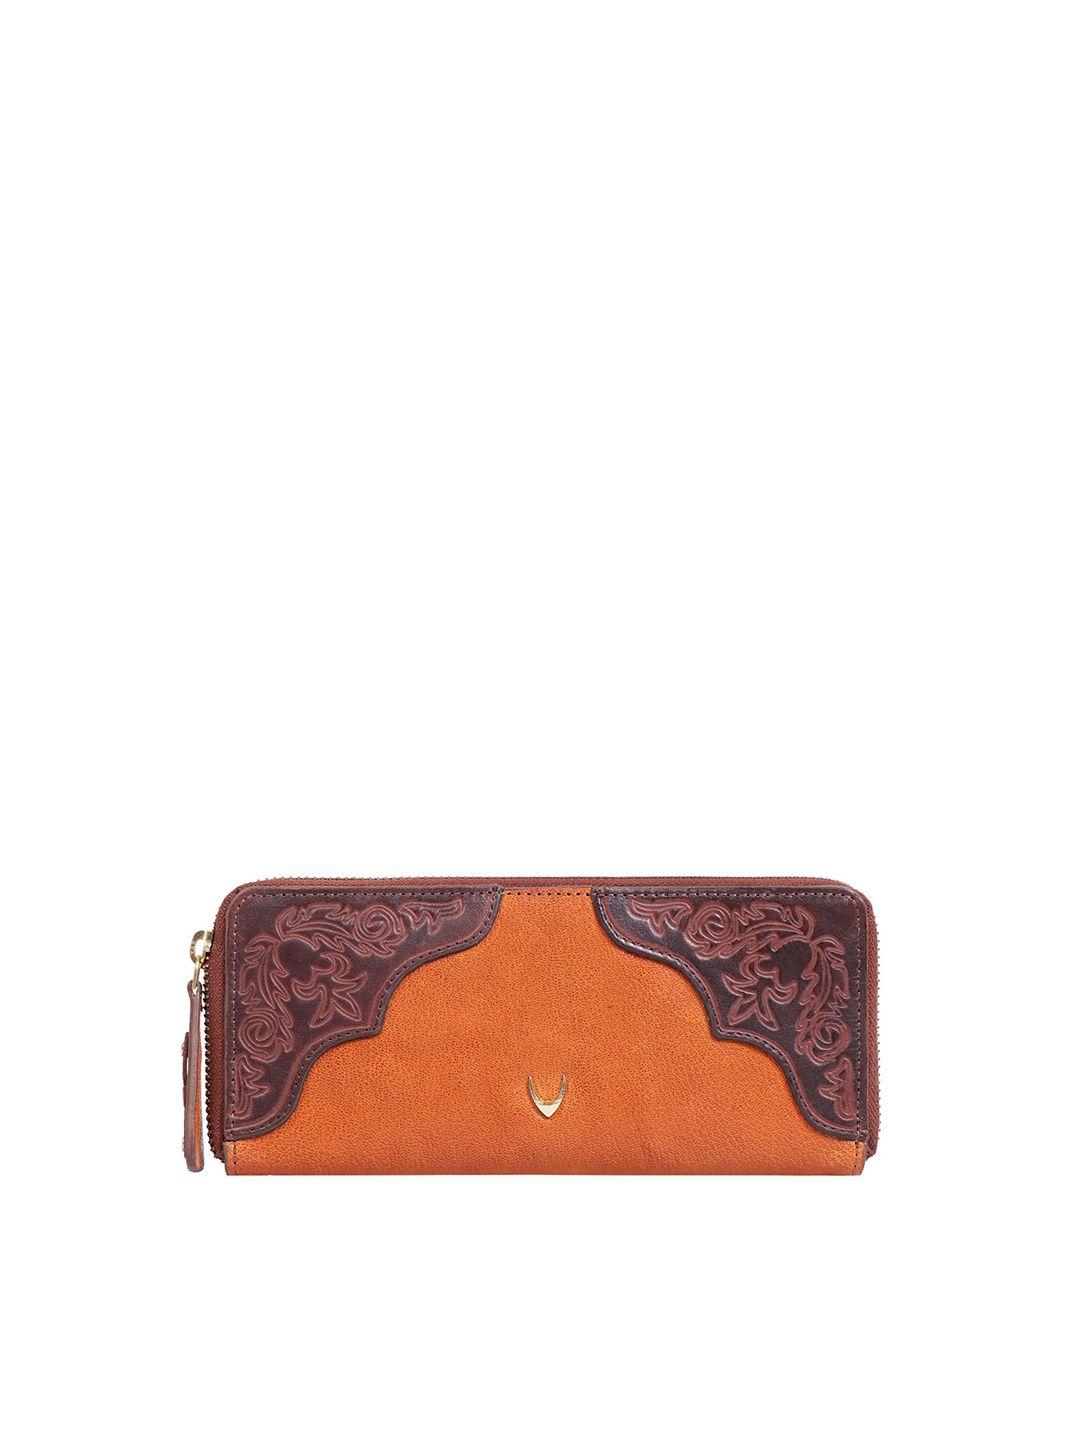 hidesign-women-orange-&-brown-textured-purse-clutch